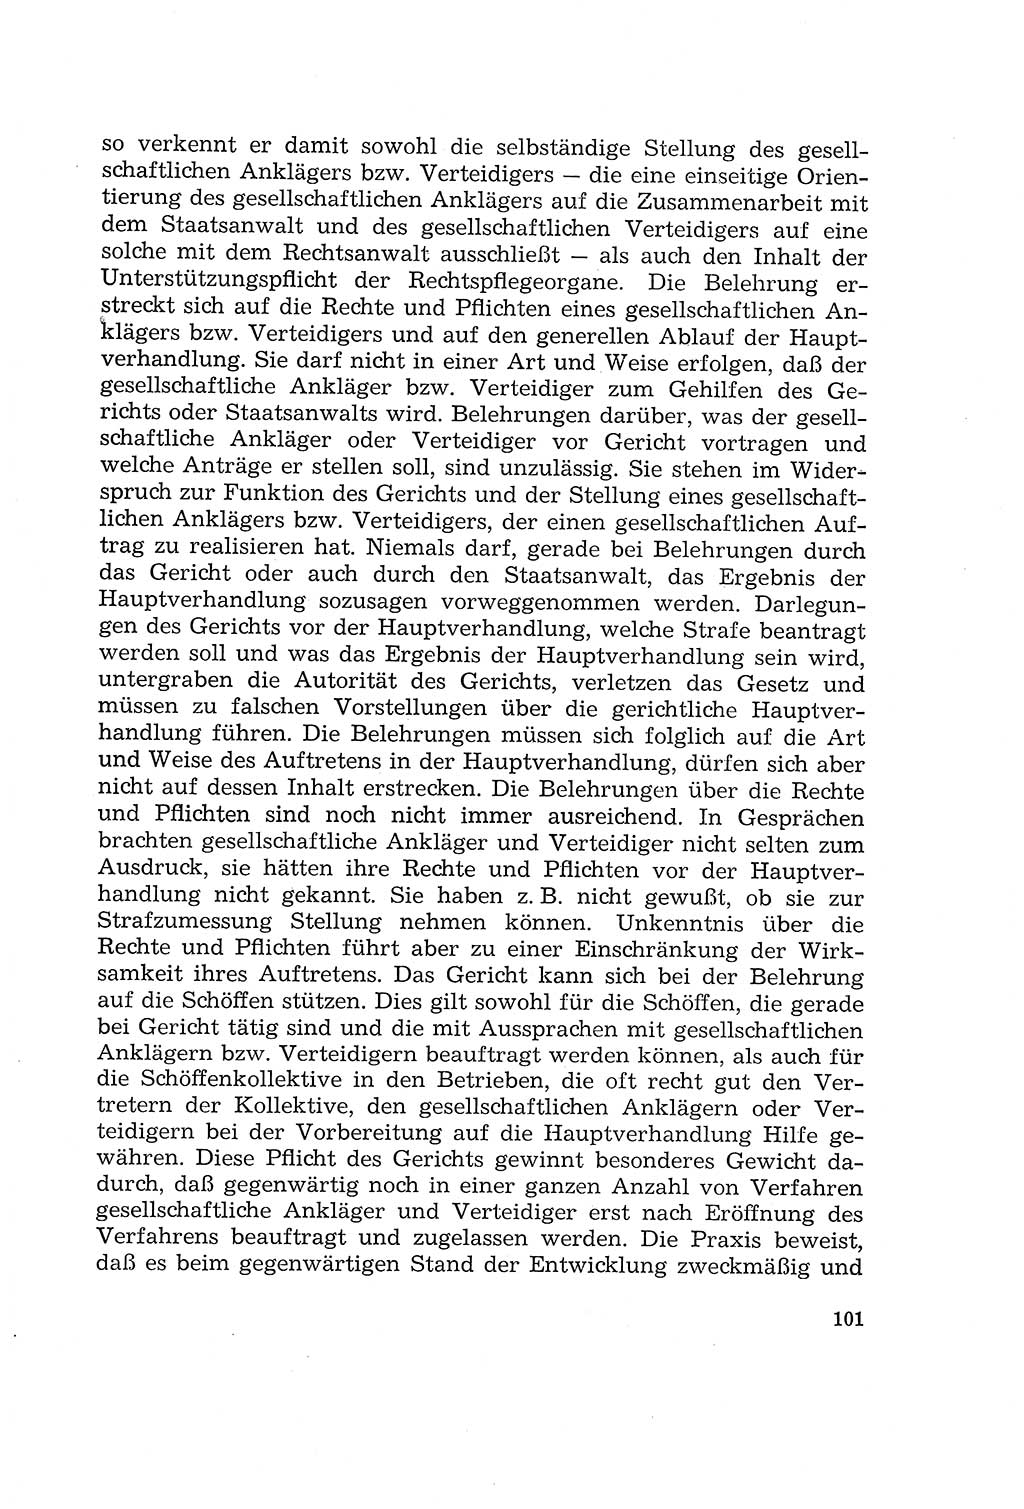 Die Mitwirkung der Werktätigen am Strafverfahren [Deutsche Demokratische Republik (DDR)] 1966, Seite 101 (Mitw. Str.-Verf. DDR 1966, S. 101)